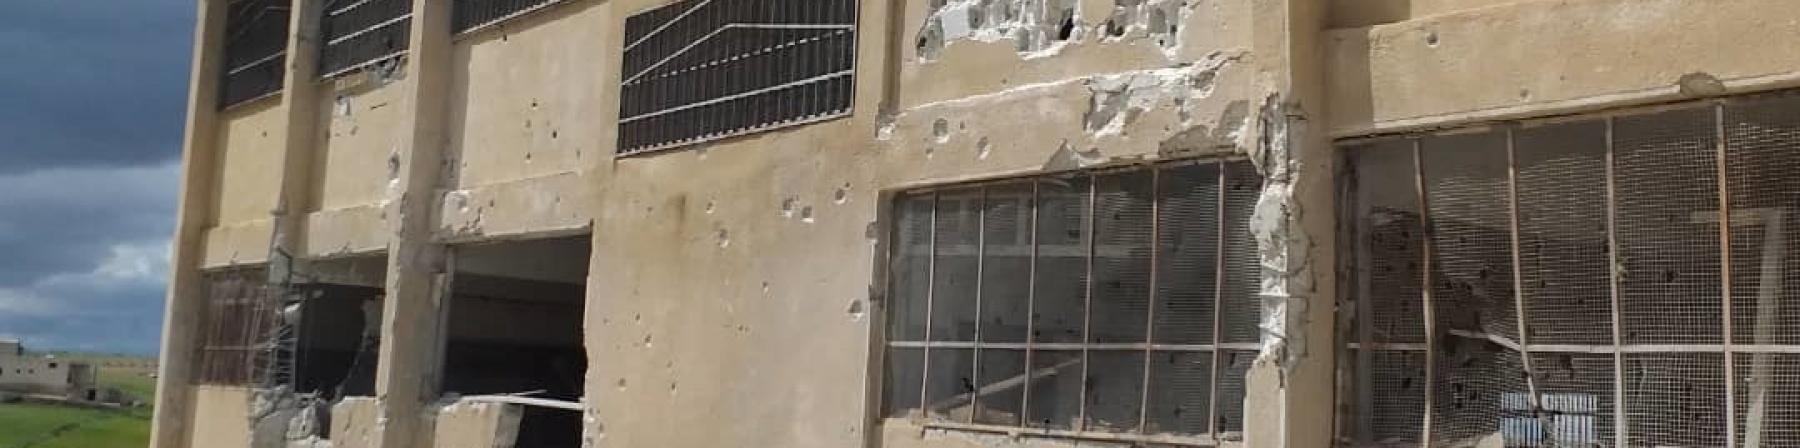 Scuola bombardata in Siria